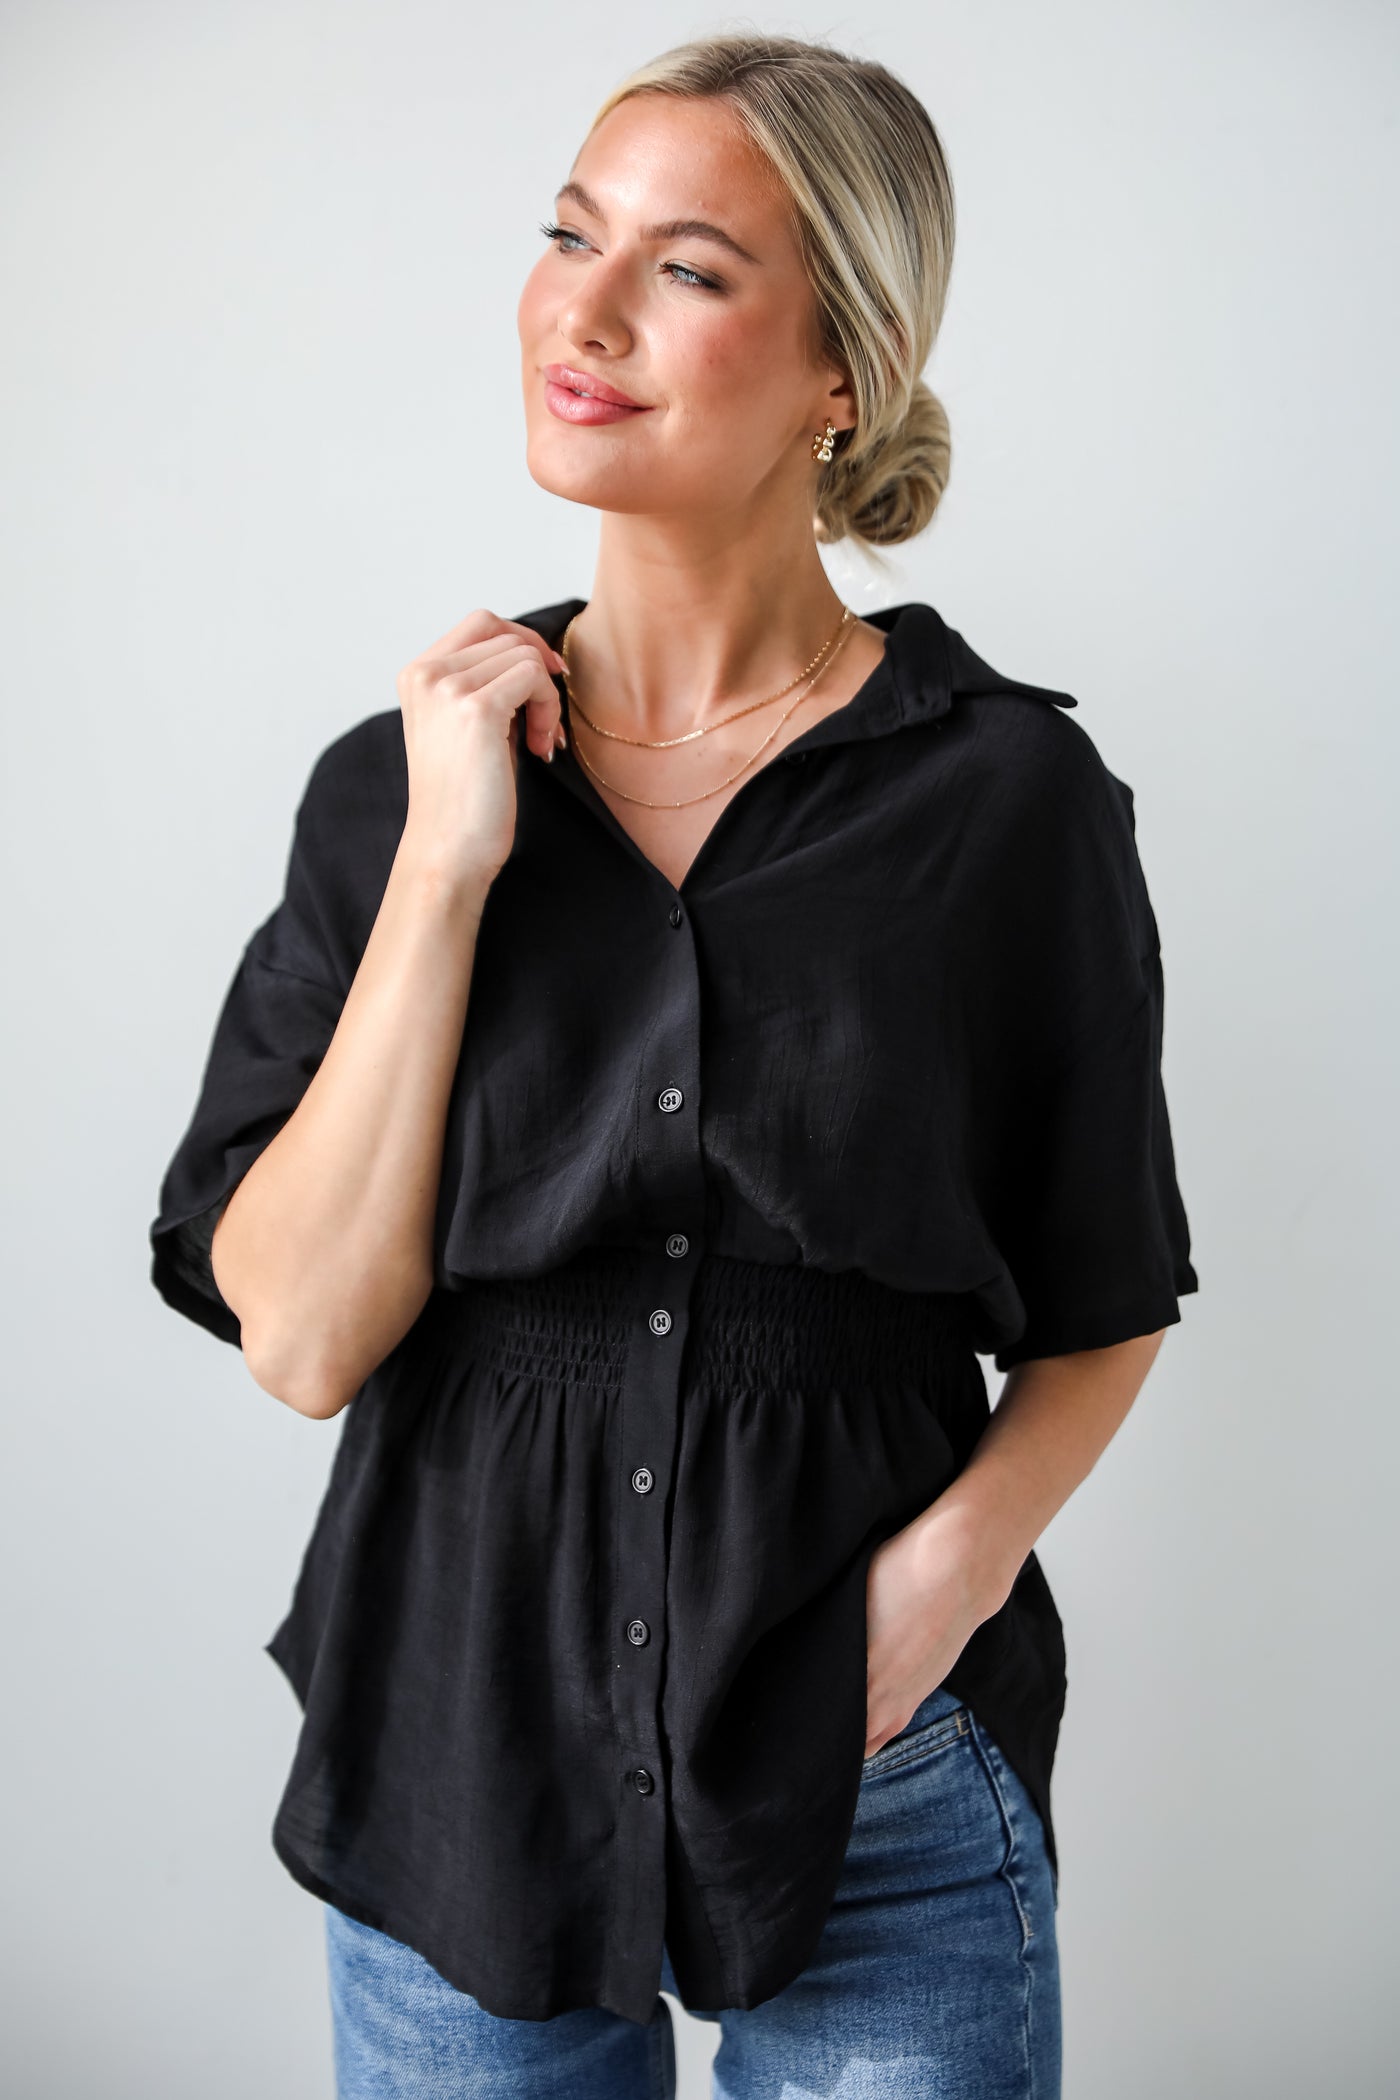 black blouses for women